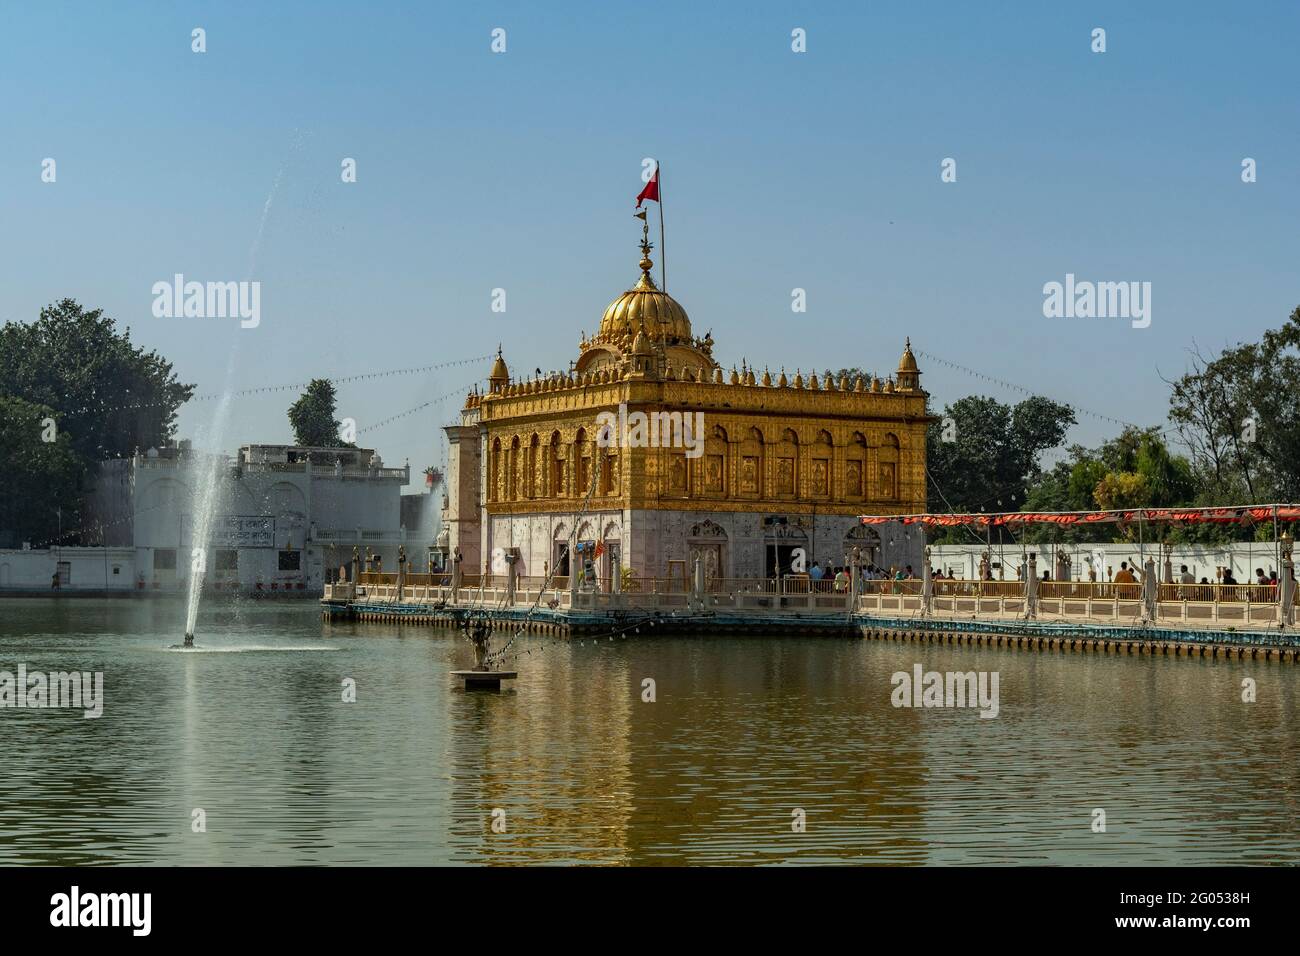 Durgiana Temple, Amritsar, Punjab, India Stock Photo